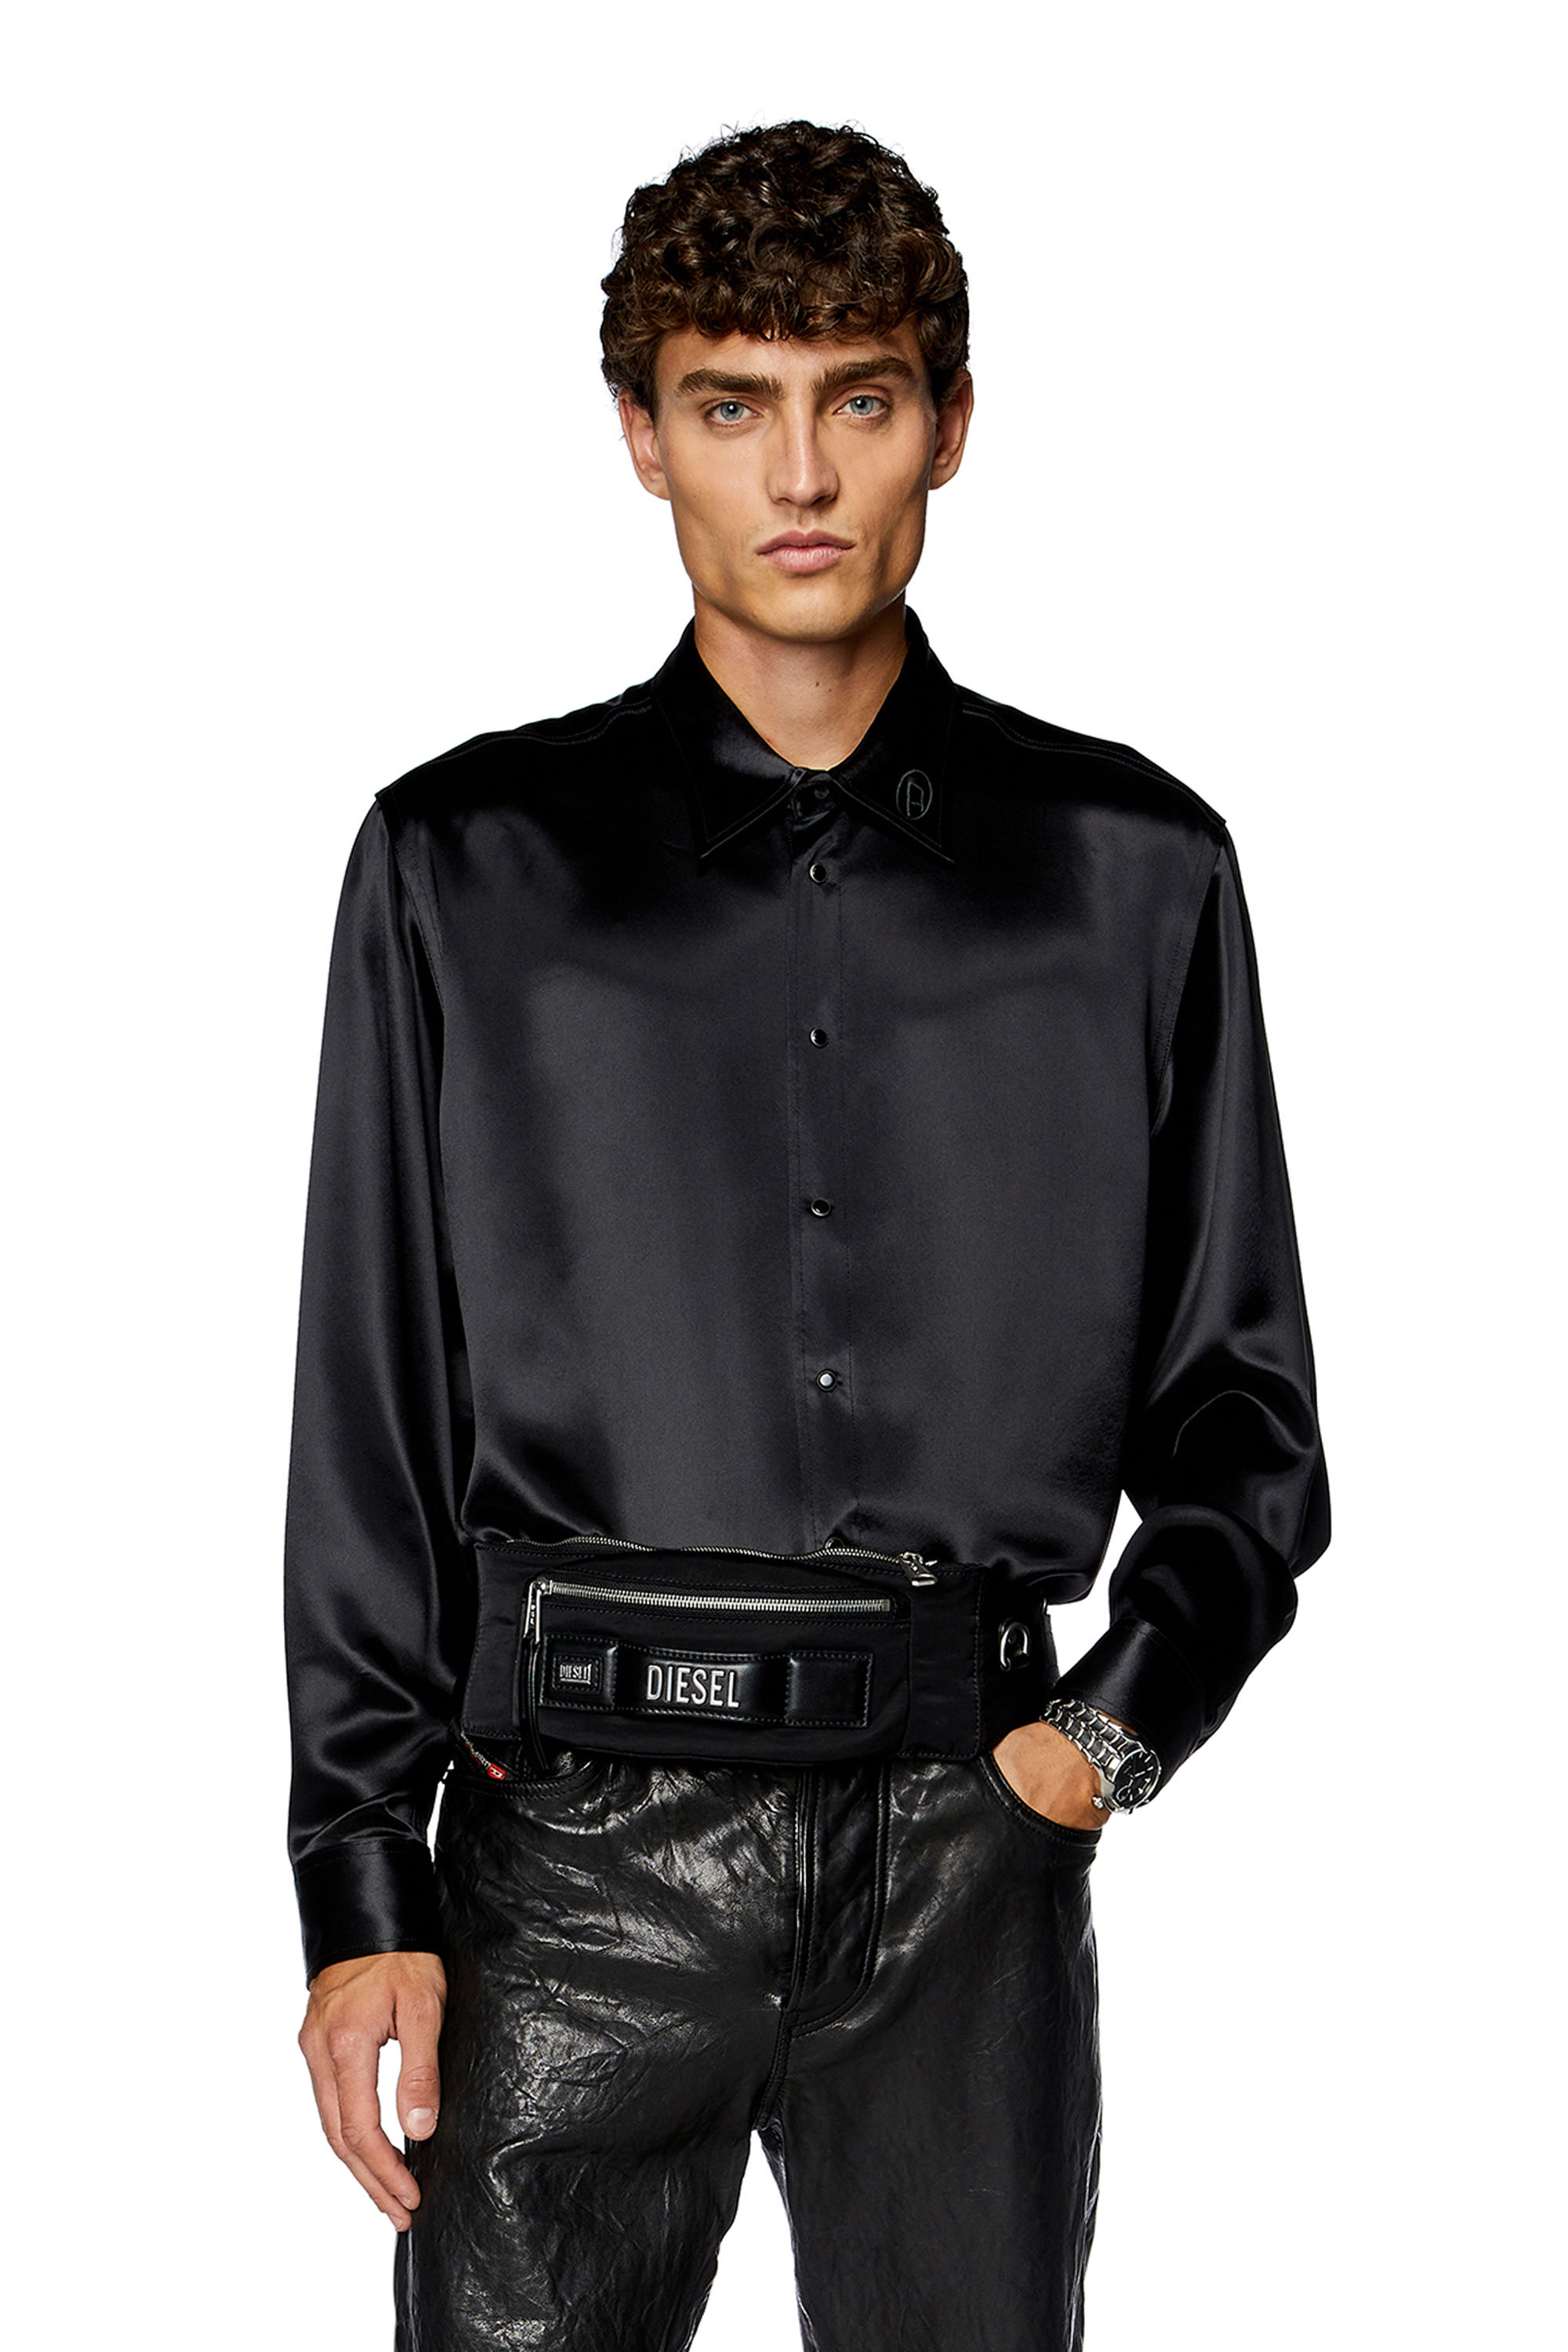 Diesel - Camisa de satén con cuello con el logotipo bordado - Camisas - Hombre - Negro